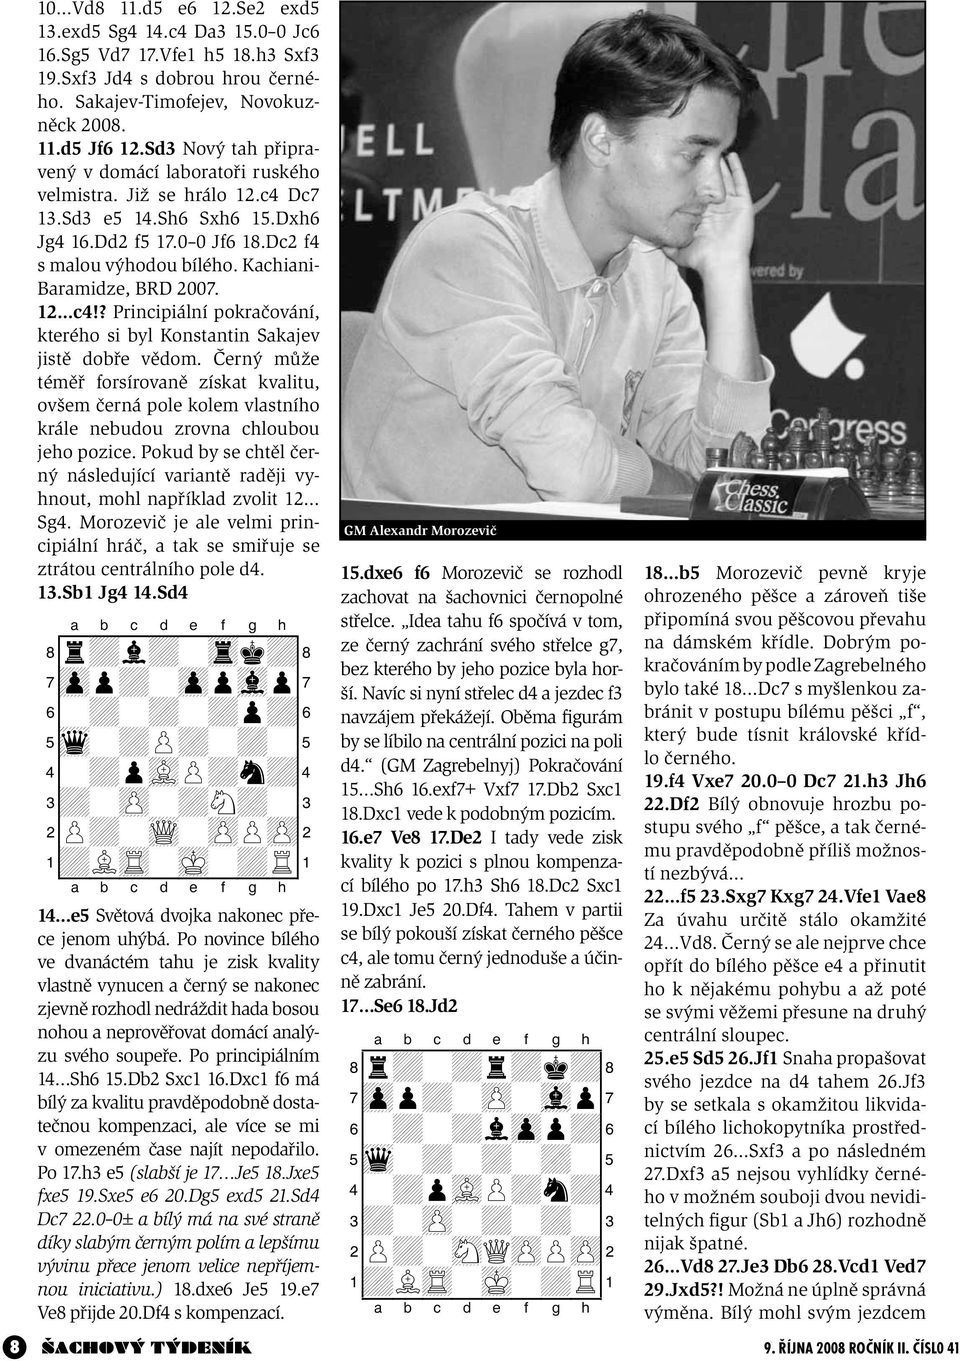 Kachiani- Baramidze, BRD 2007. 12 c4!? Principiální pokračování, kterého si byl Konstantin Sakajev jistě dobře vědom.